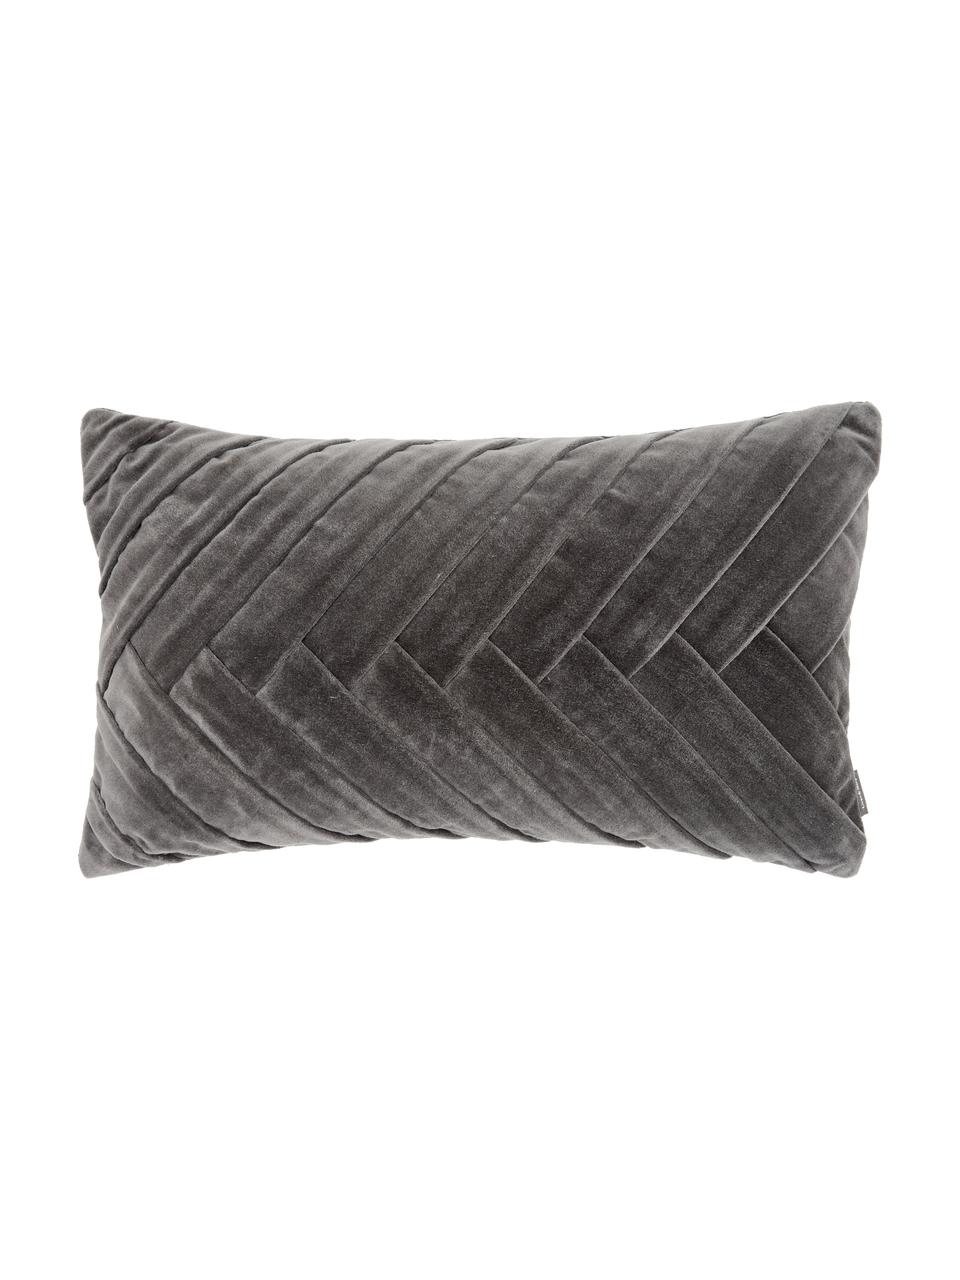 Samt-Kissen Folded mit Struktur-Oberfläche, mit Inlett, Bezug: 100% Baumwollsamt, Grau, B 30 x L 50 cm